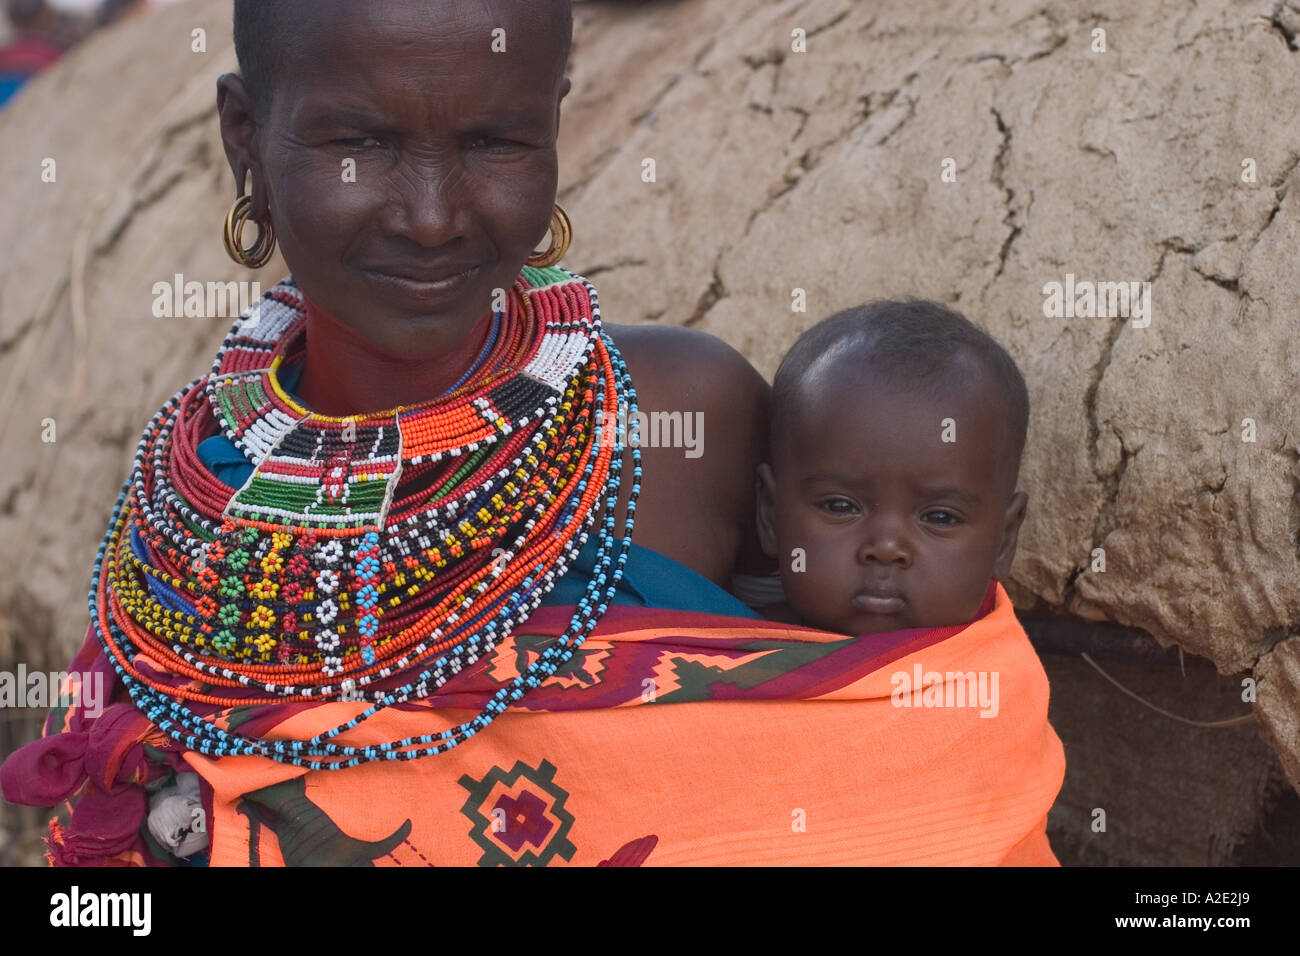 Africa, Kenya, Samburu tribeswoman and child. Stock Photo